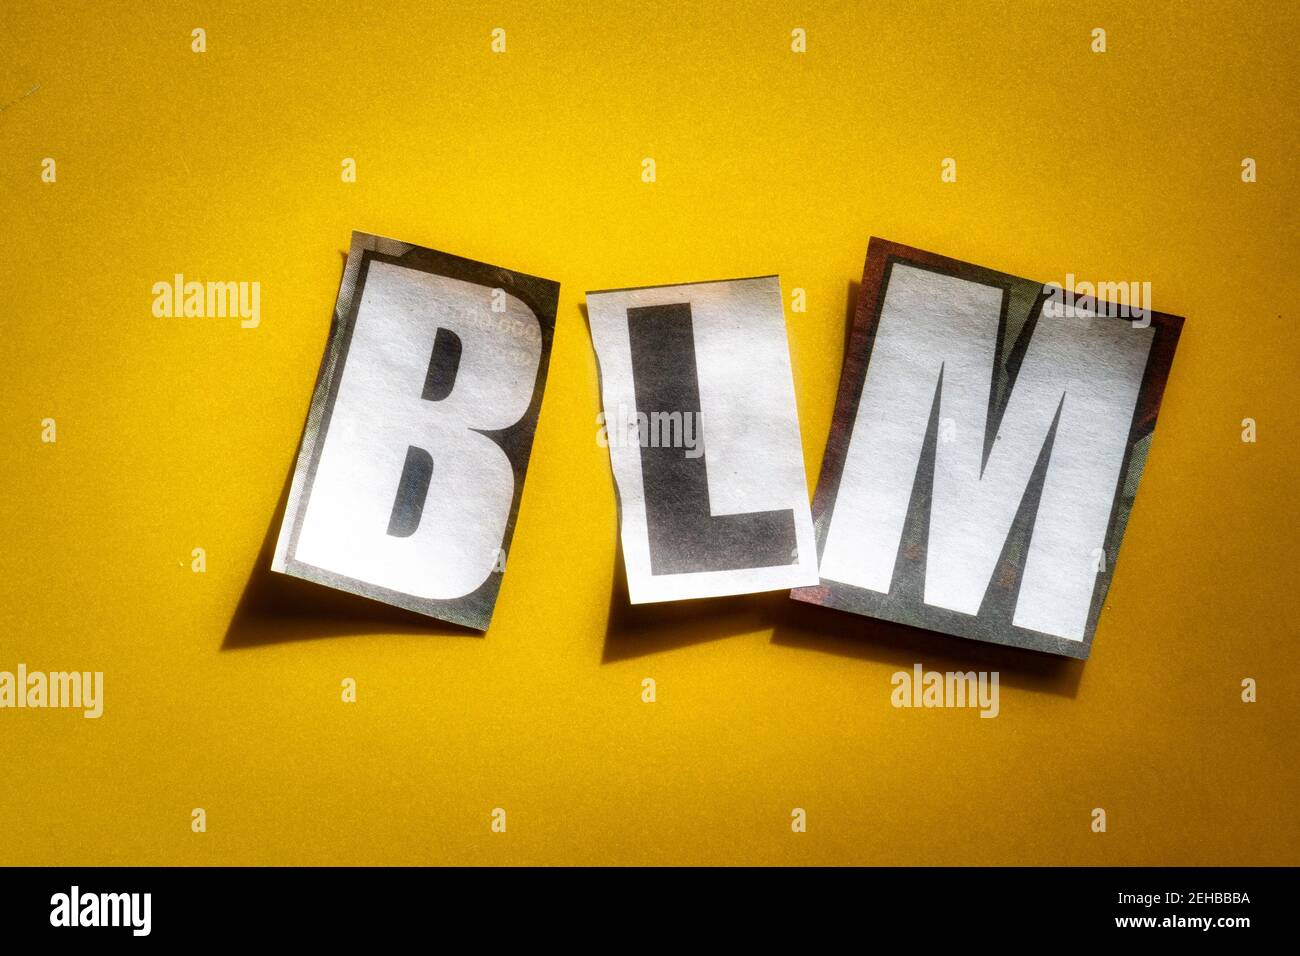 Le lettere BLM per Black Lives contano utilizzando carta ritagliata lettere nella tipografia dell'effetto di nota di riscatto Foto Stock